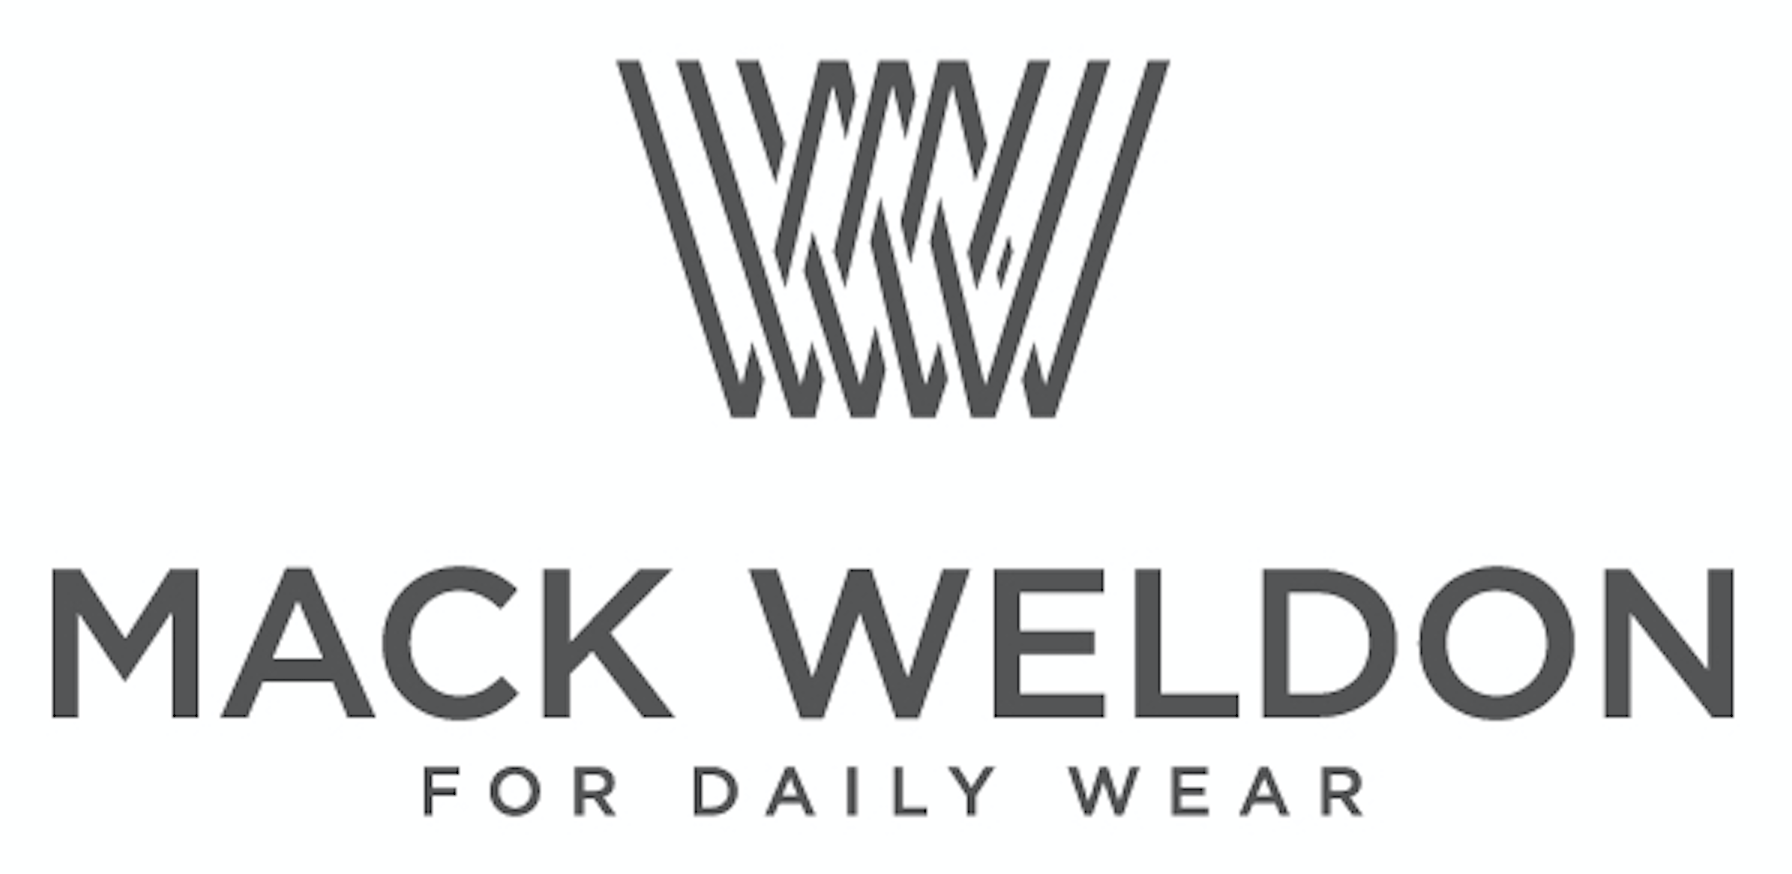 Weldon Logo - mack weldon logoès